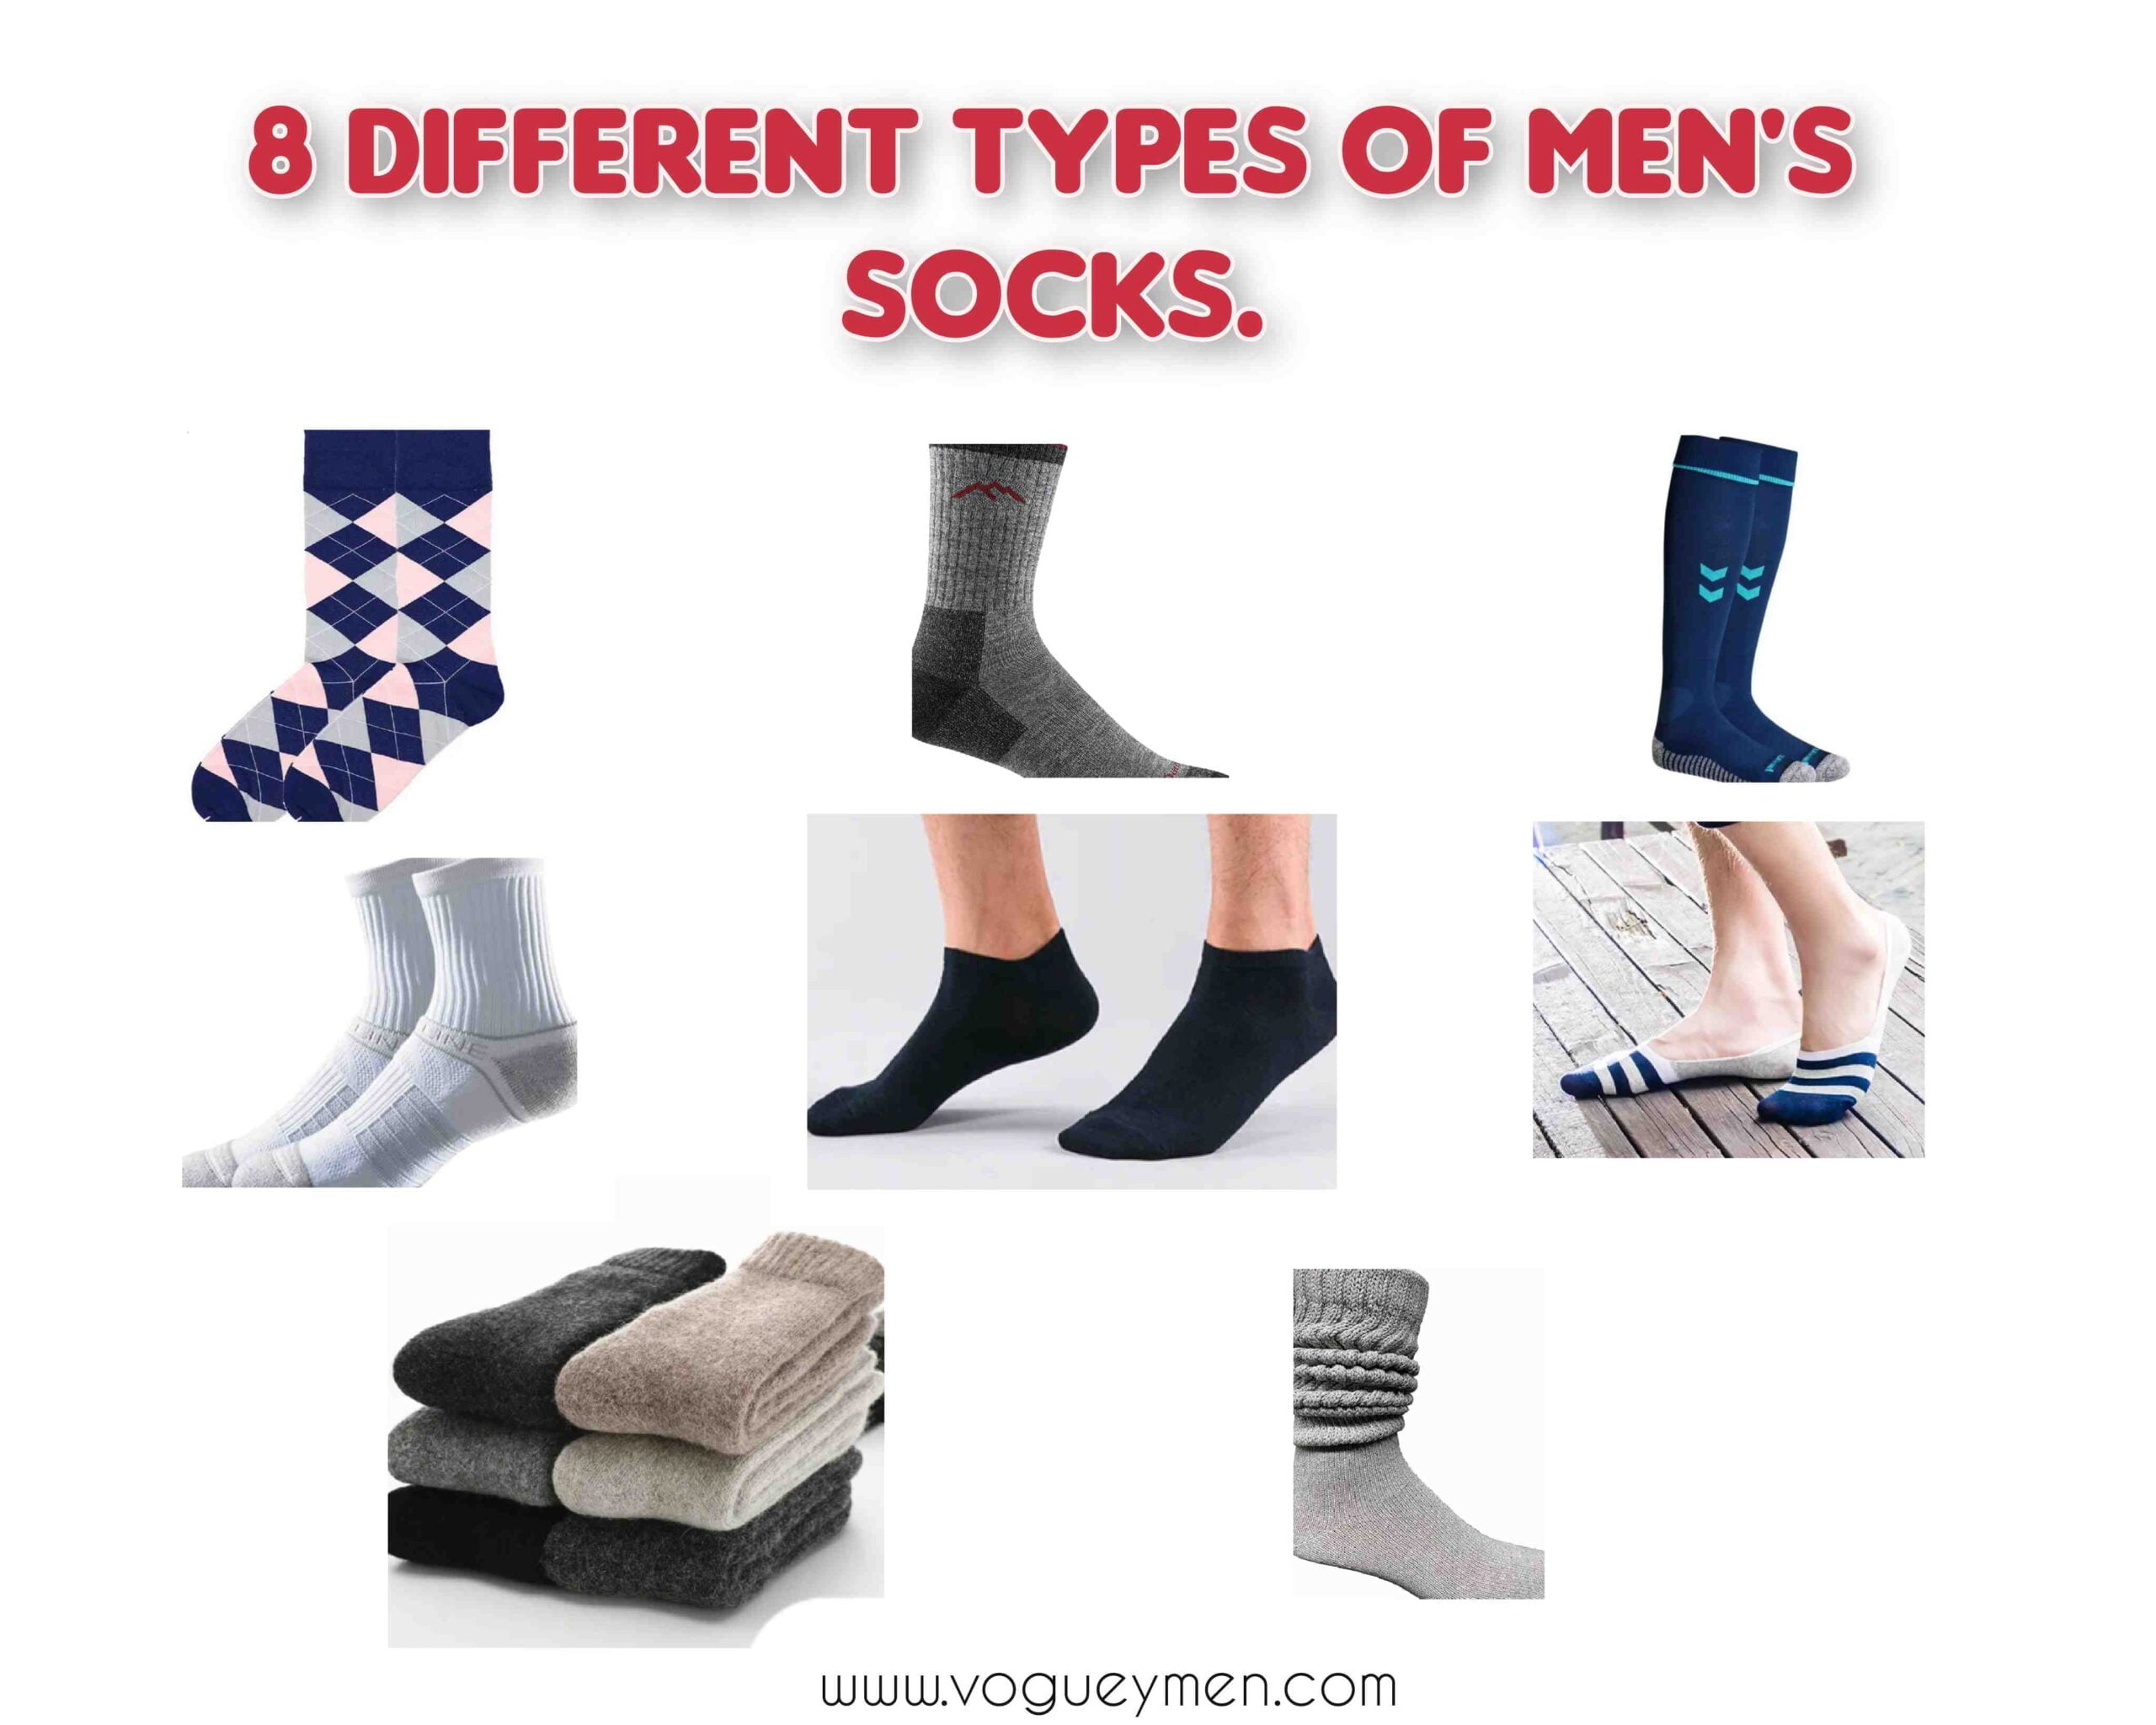 Types of men's socks.